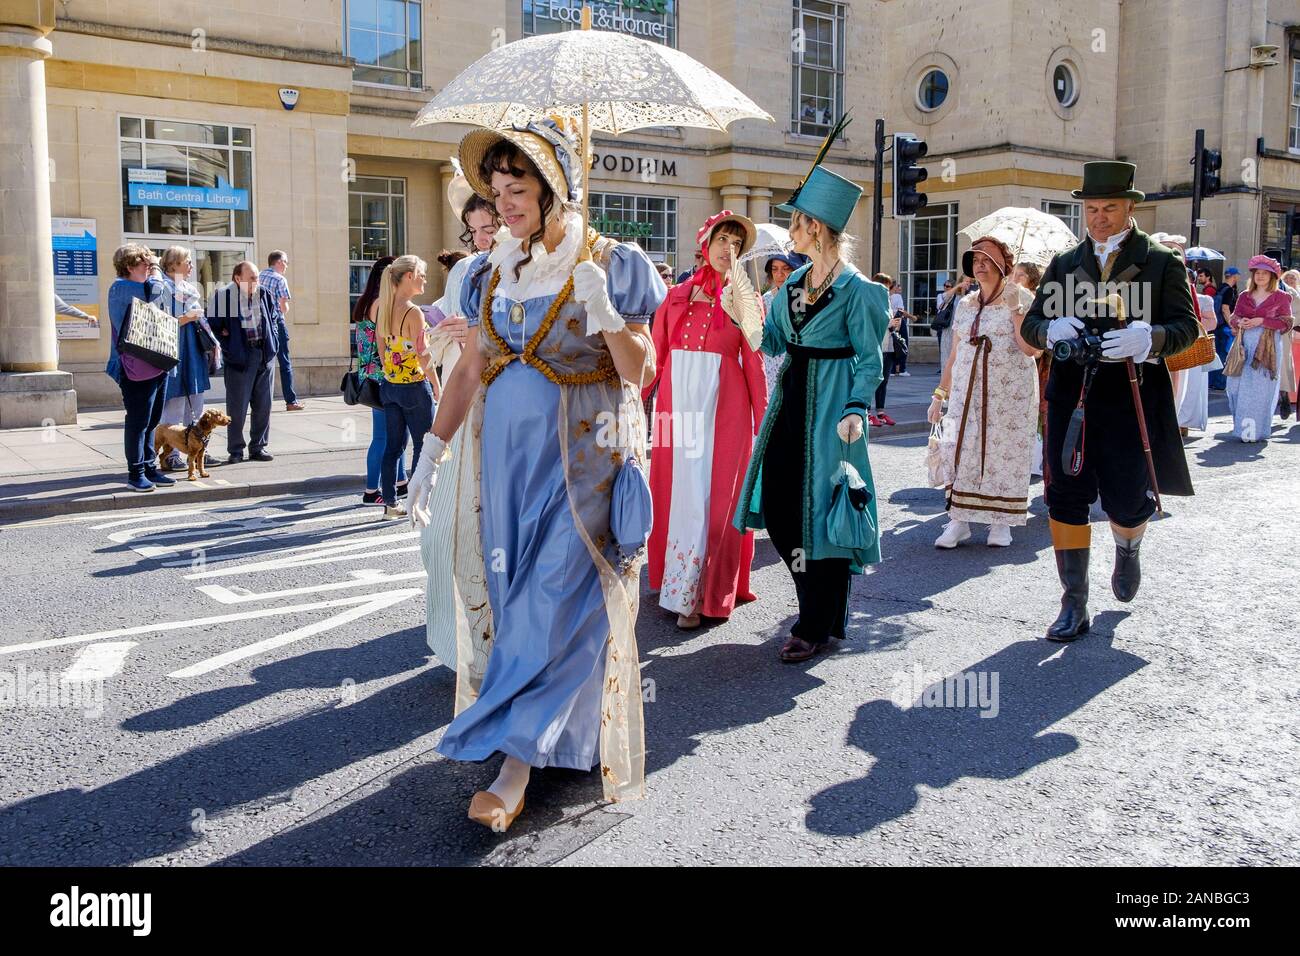 Jane Austen fan vestiti in costumi regency sono illustrati prendendo parte alla Jane Austen Festival Regency Promenade in costume.Bagno,l'Inghilterra,UK 14-09-19 Foto Stock